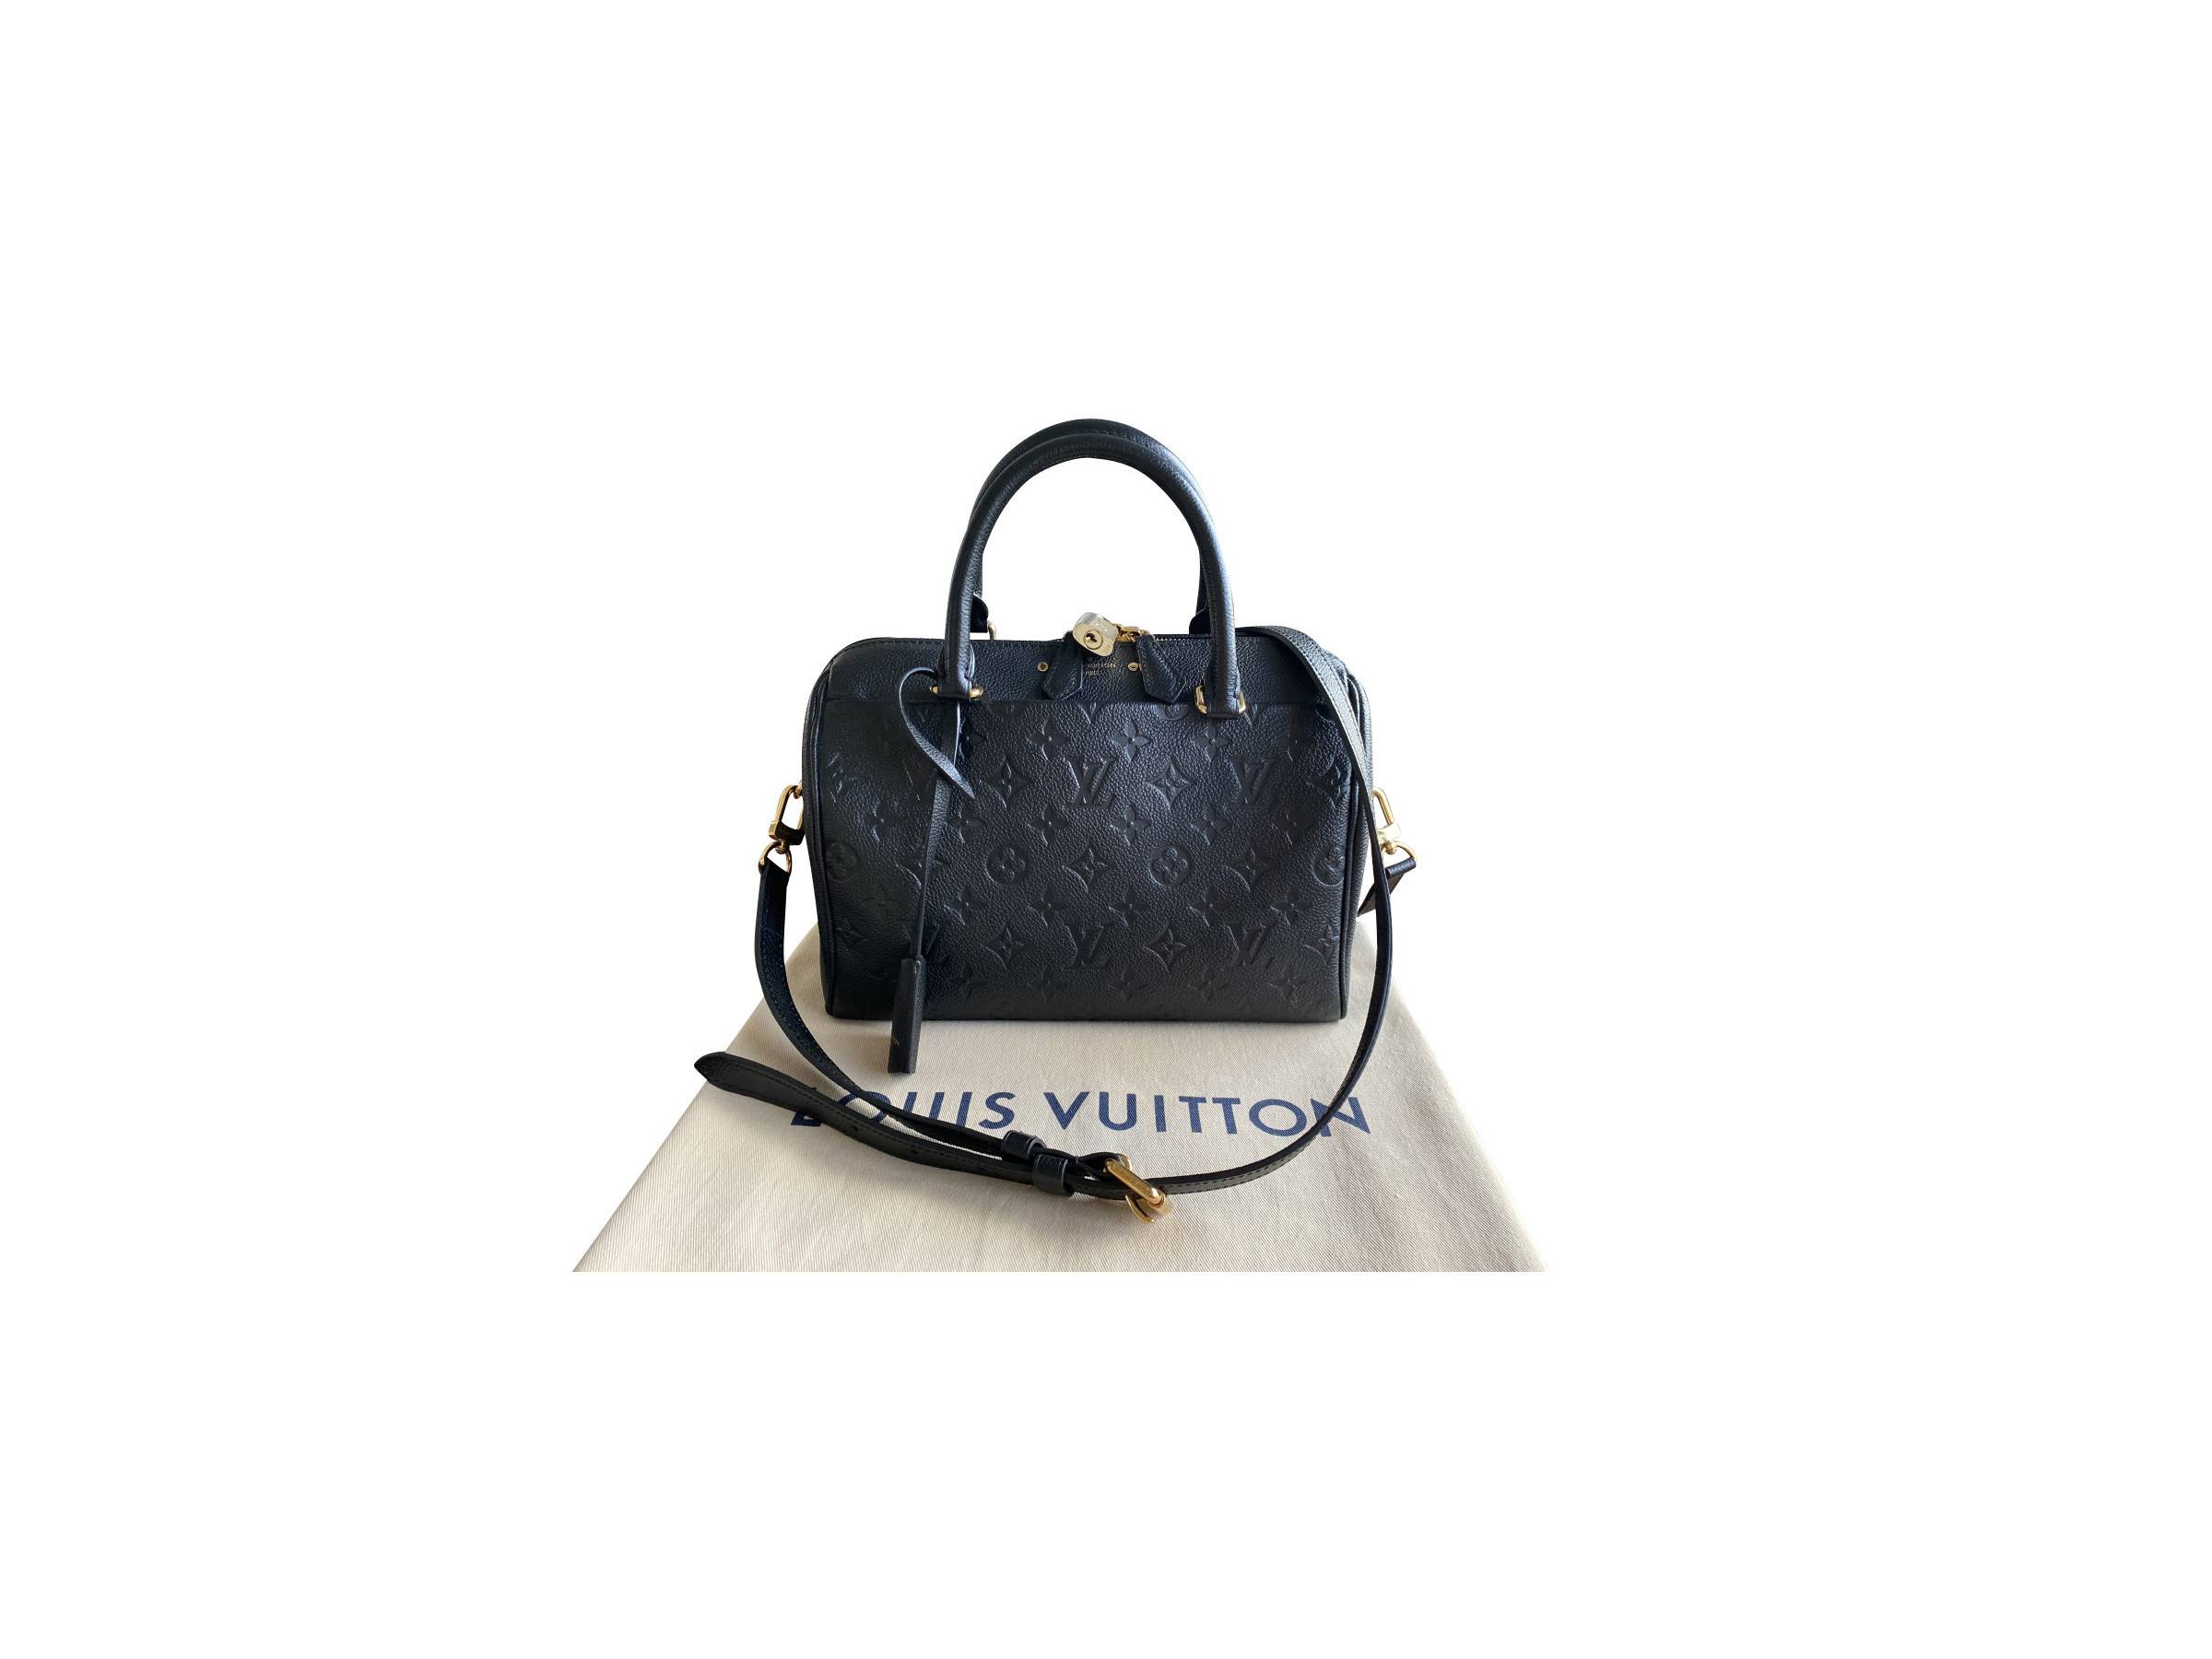 VERKAUFT - Louis Vuitton Tasche M59273 Speedy 25 Monogram Empreinte Leder  schwarz mit Schulerriemen Schultertasche * TOP